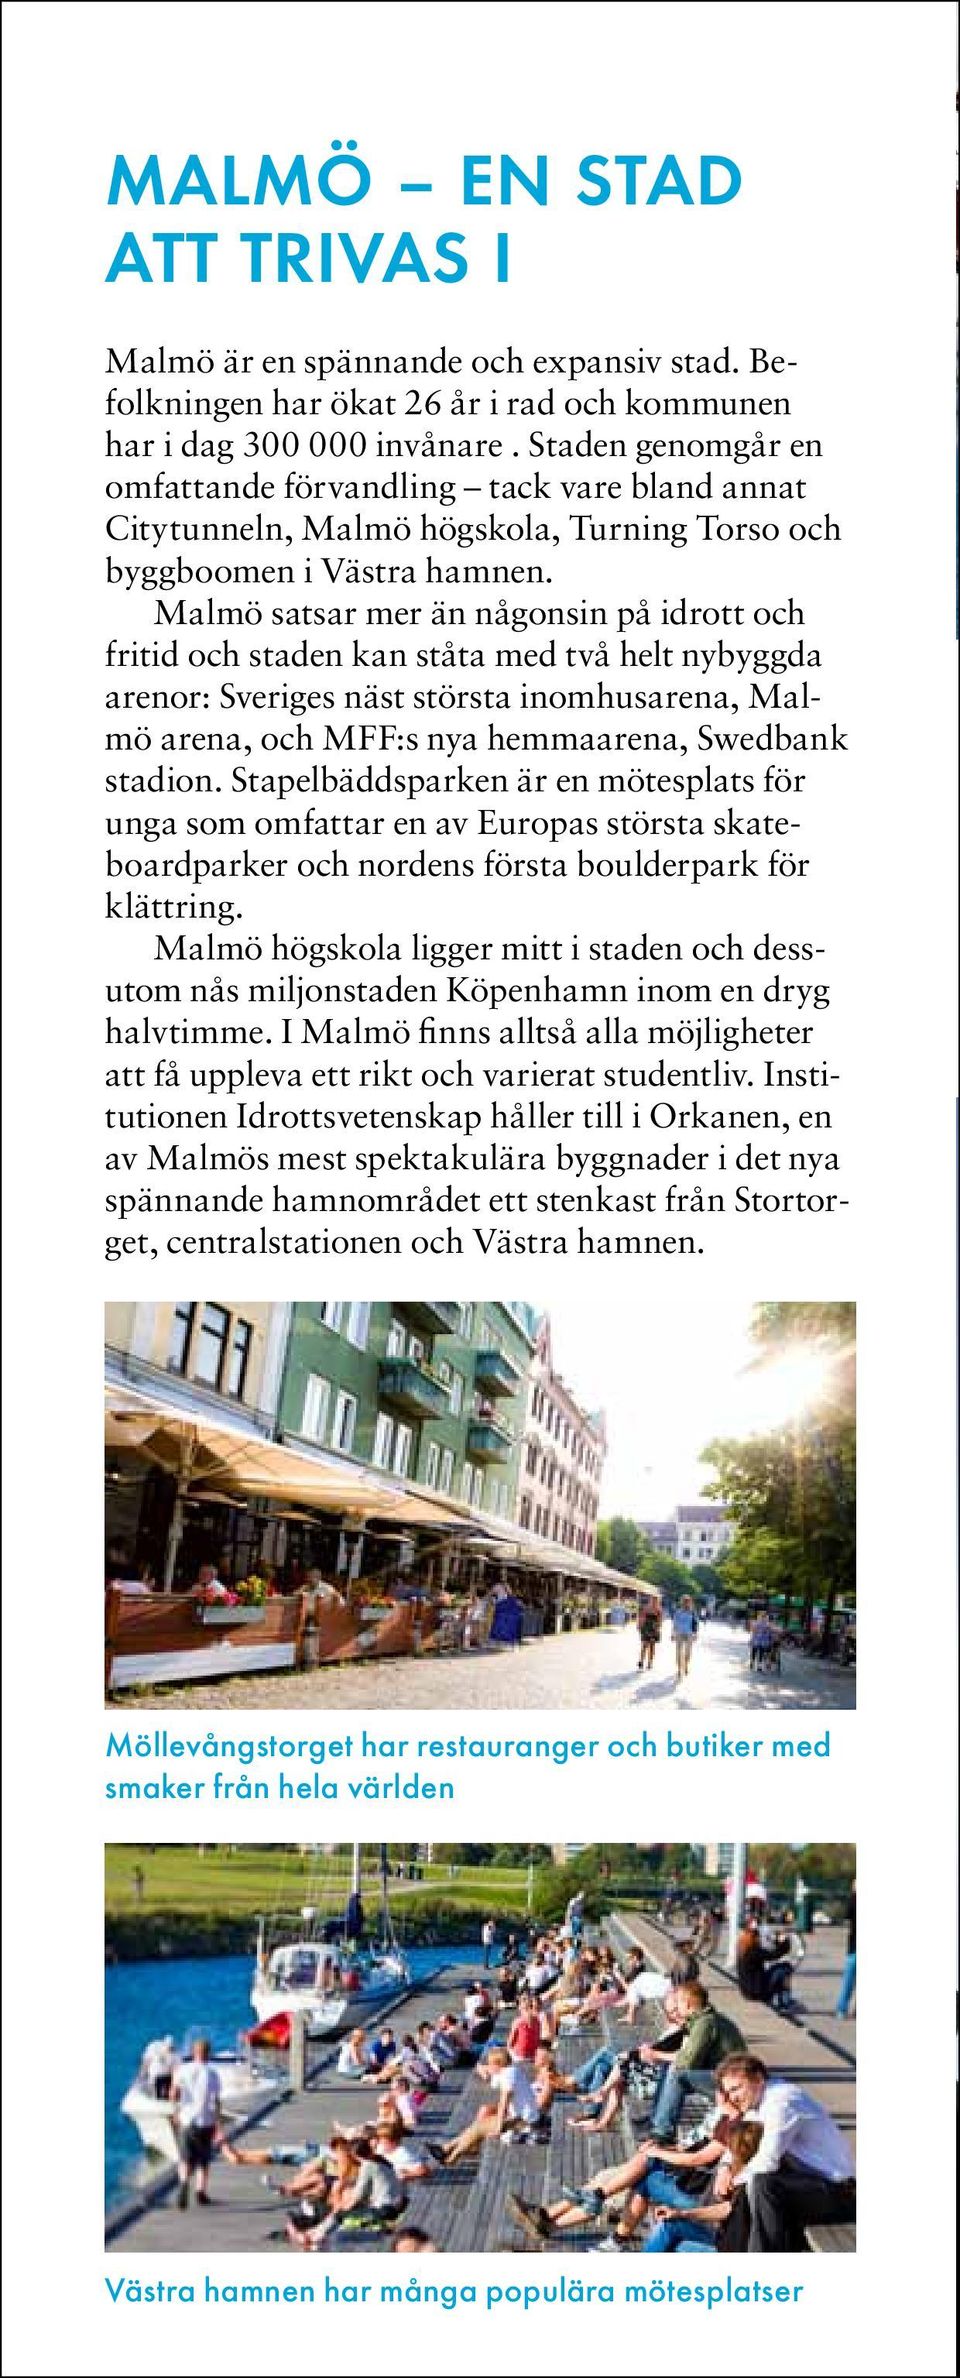 Malmö satsar mer än någonsin på idrott och fritid och staden kan ståta med två helt nybyggda arenor: Sveriges näst största inomhusarena, Malmö arena, och MFF:s nya hemmaarena, Swedbank stadion.